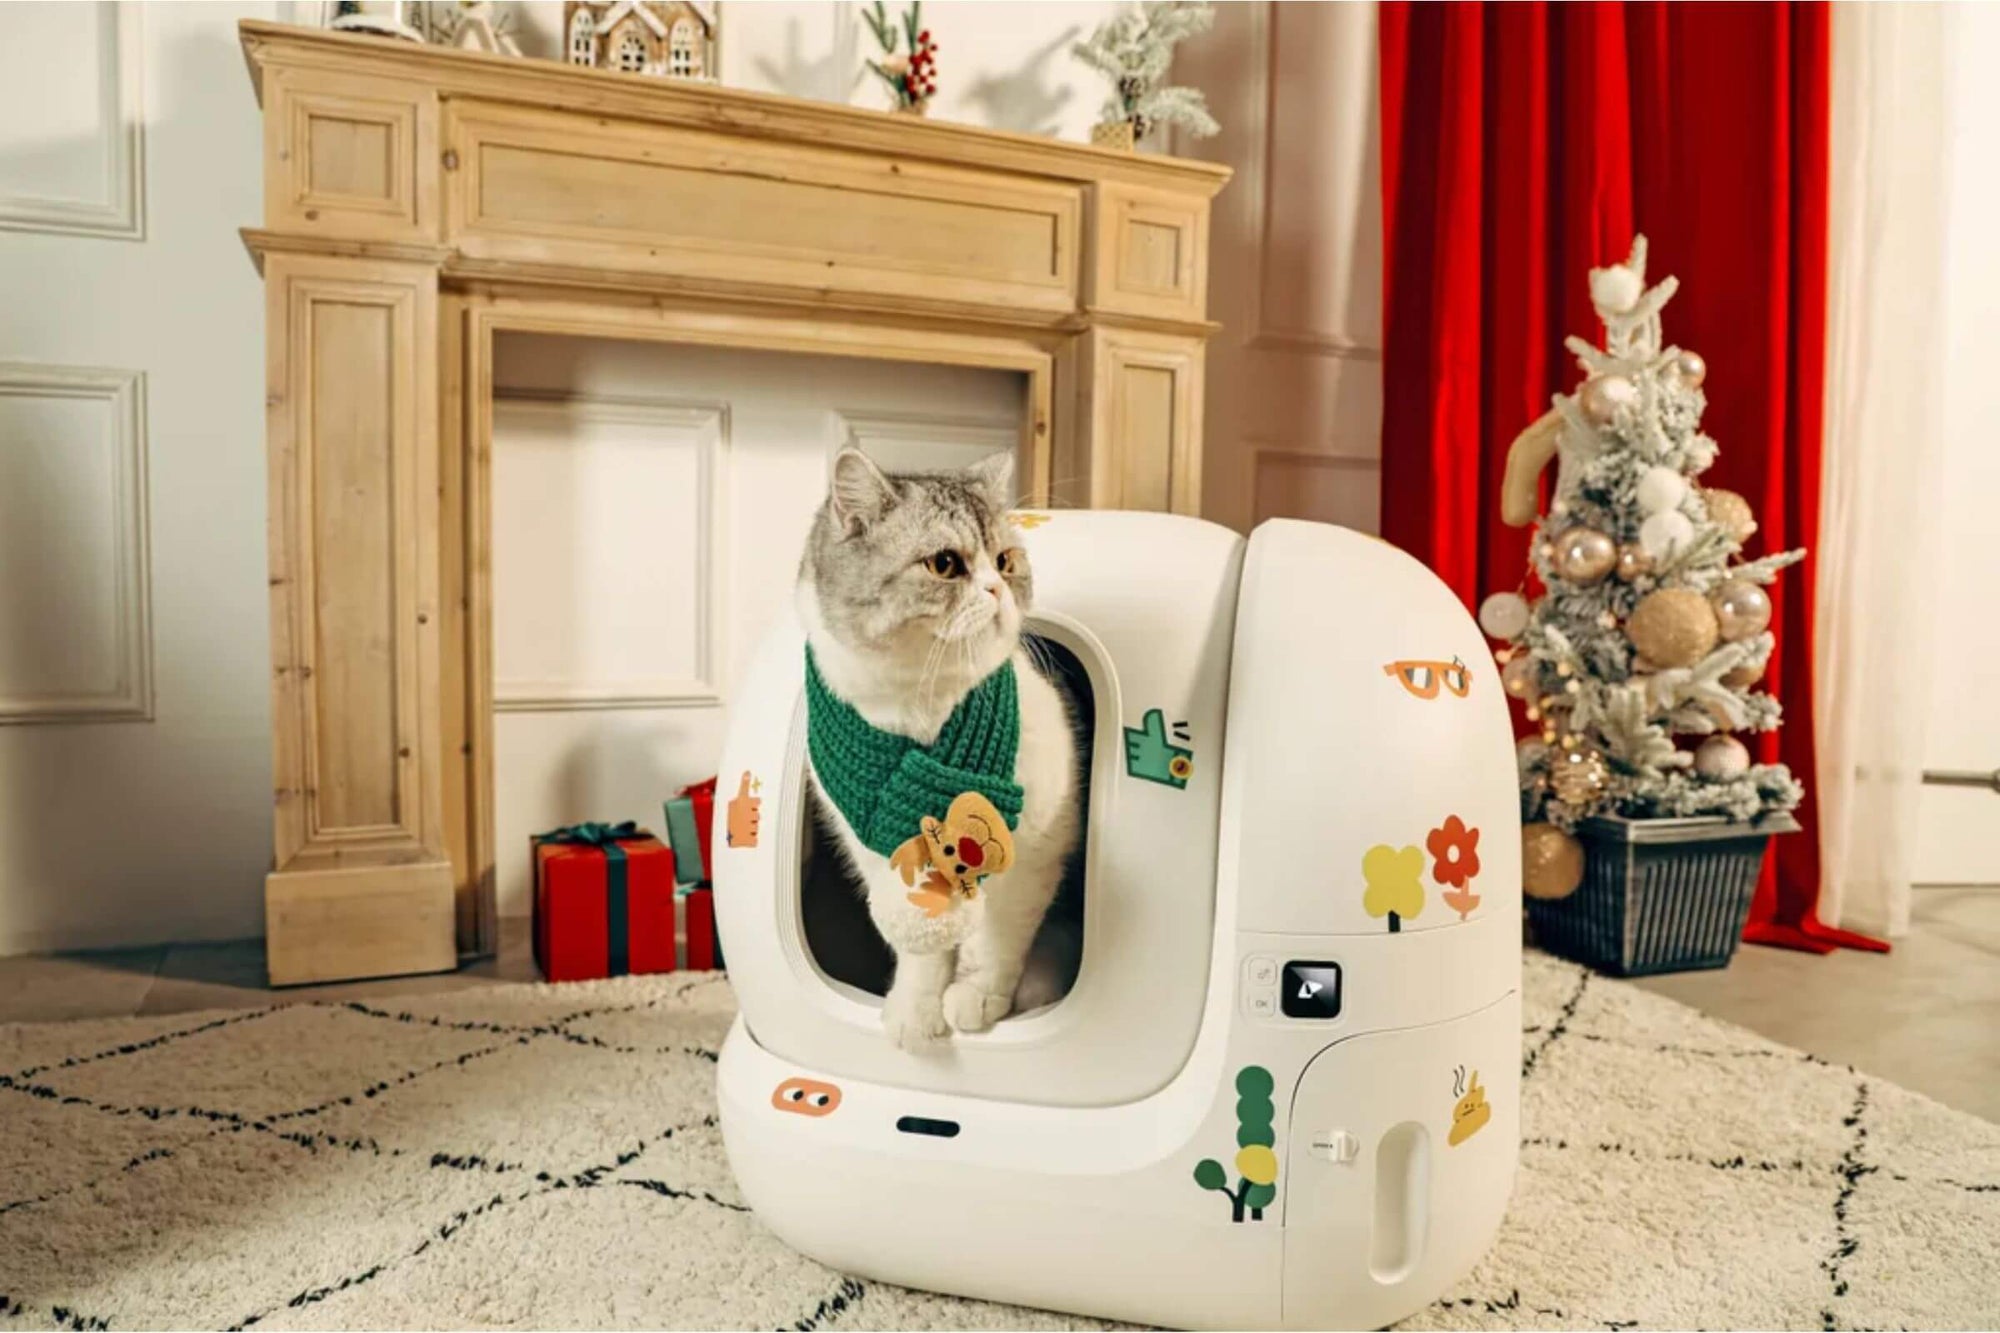 Weiße Katze sitzt in einem automatischem Katzenklo und die Umgebung ist weihnachtlich dekoriert